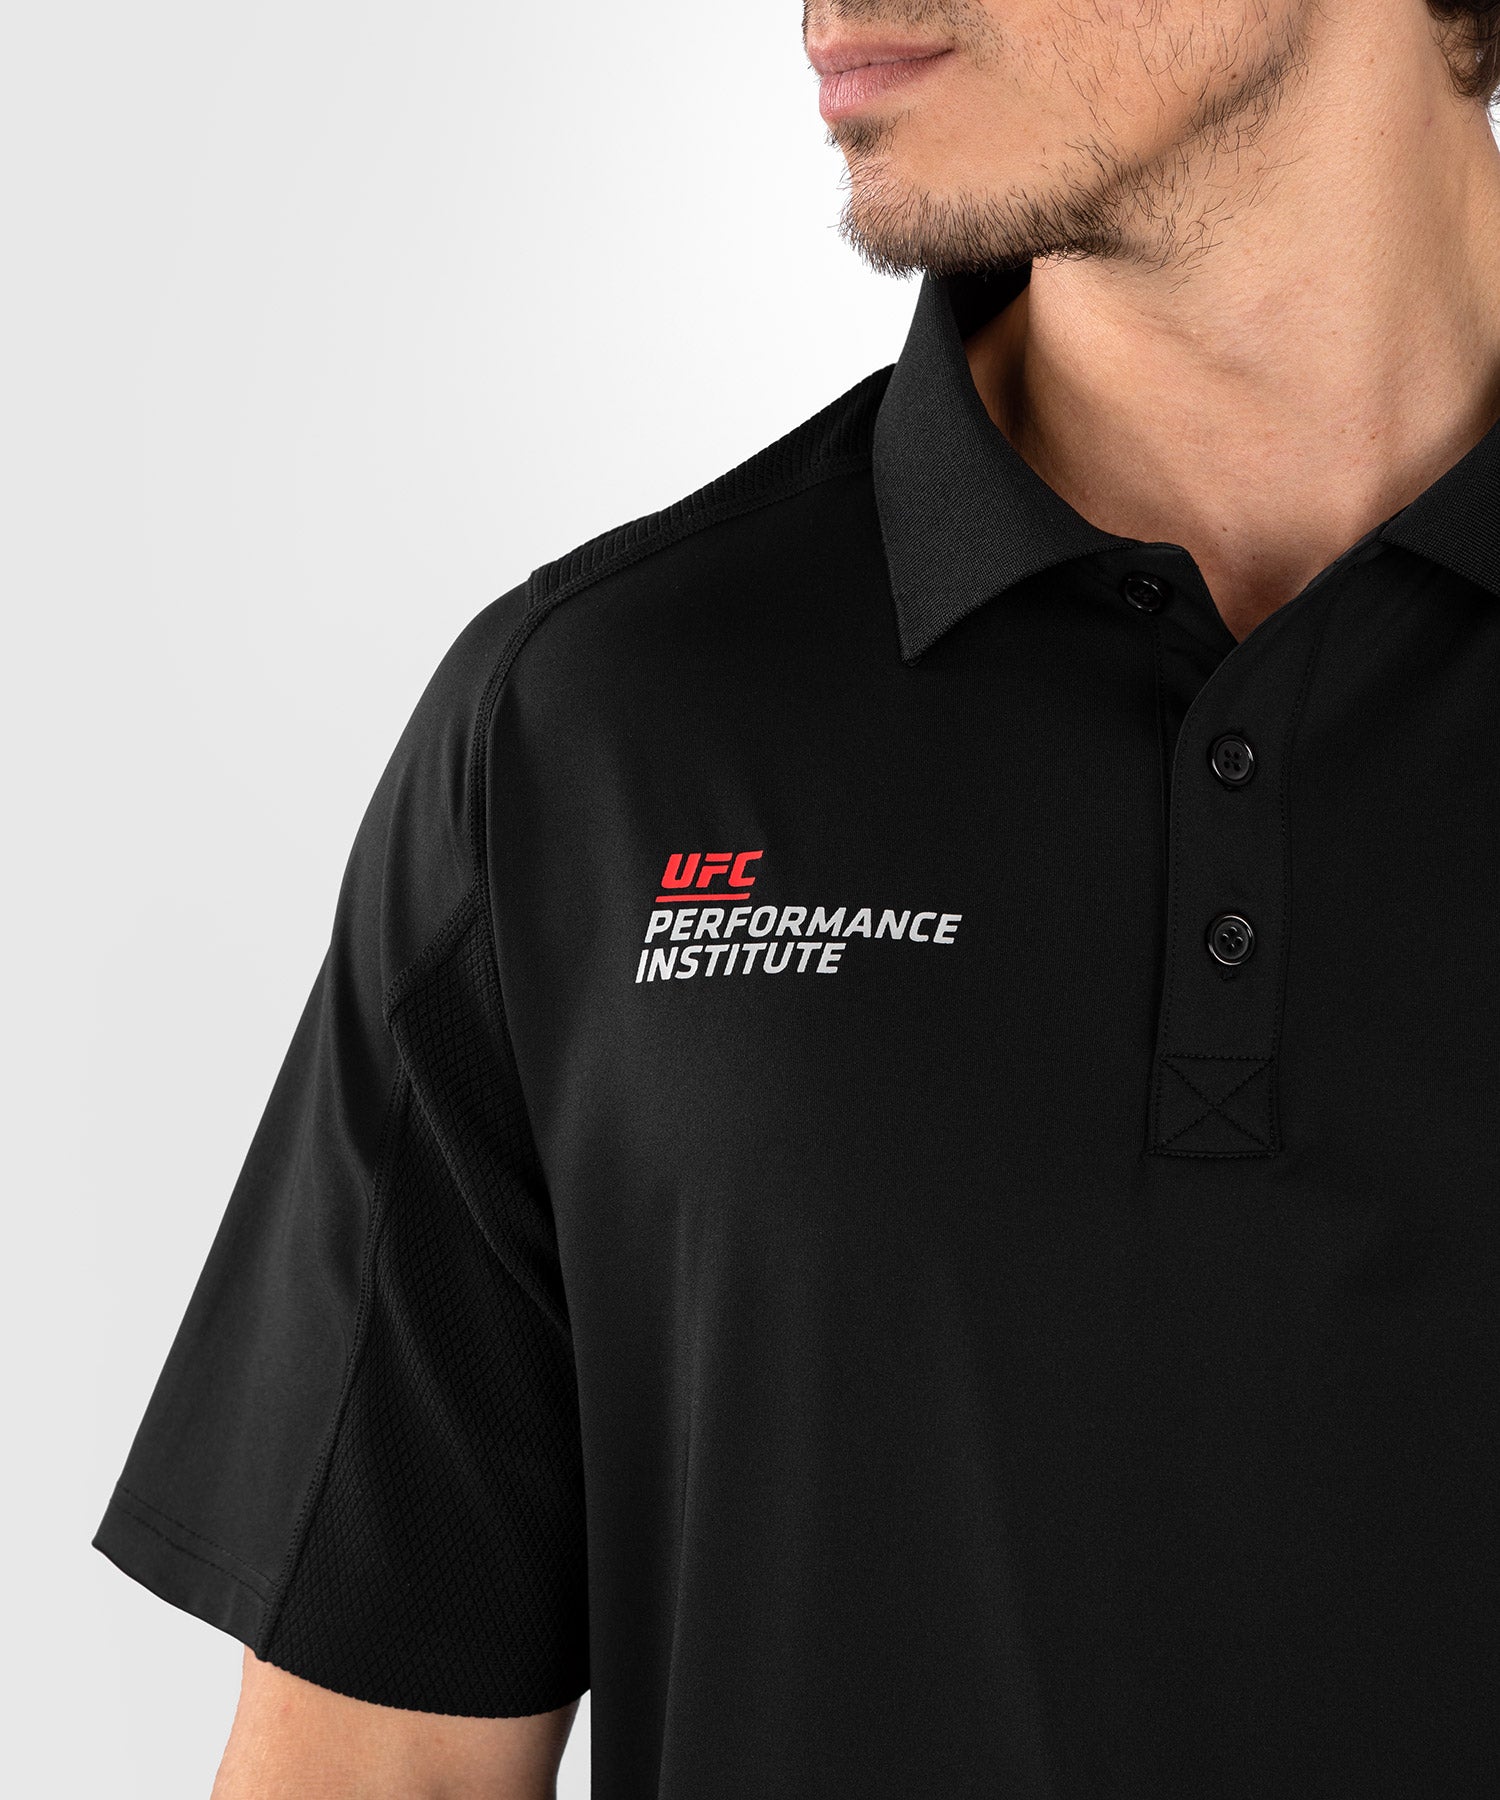 UFC Venum Performance Institute 2.0 Men’s T-Shirt - Black/Red